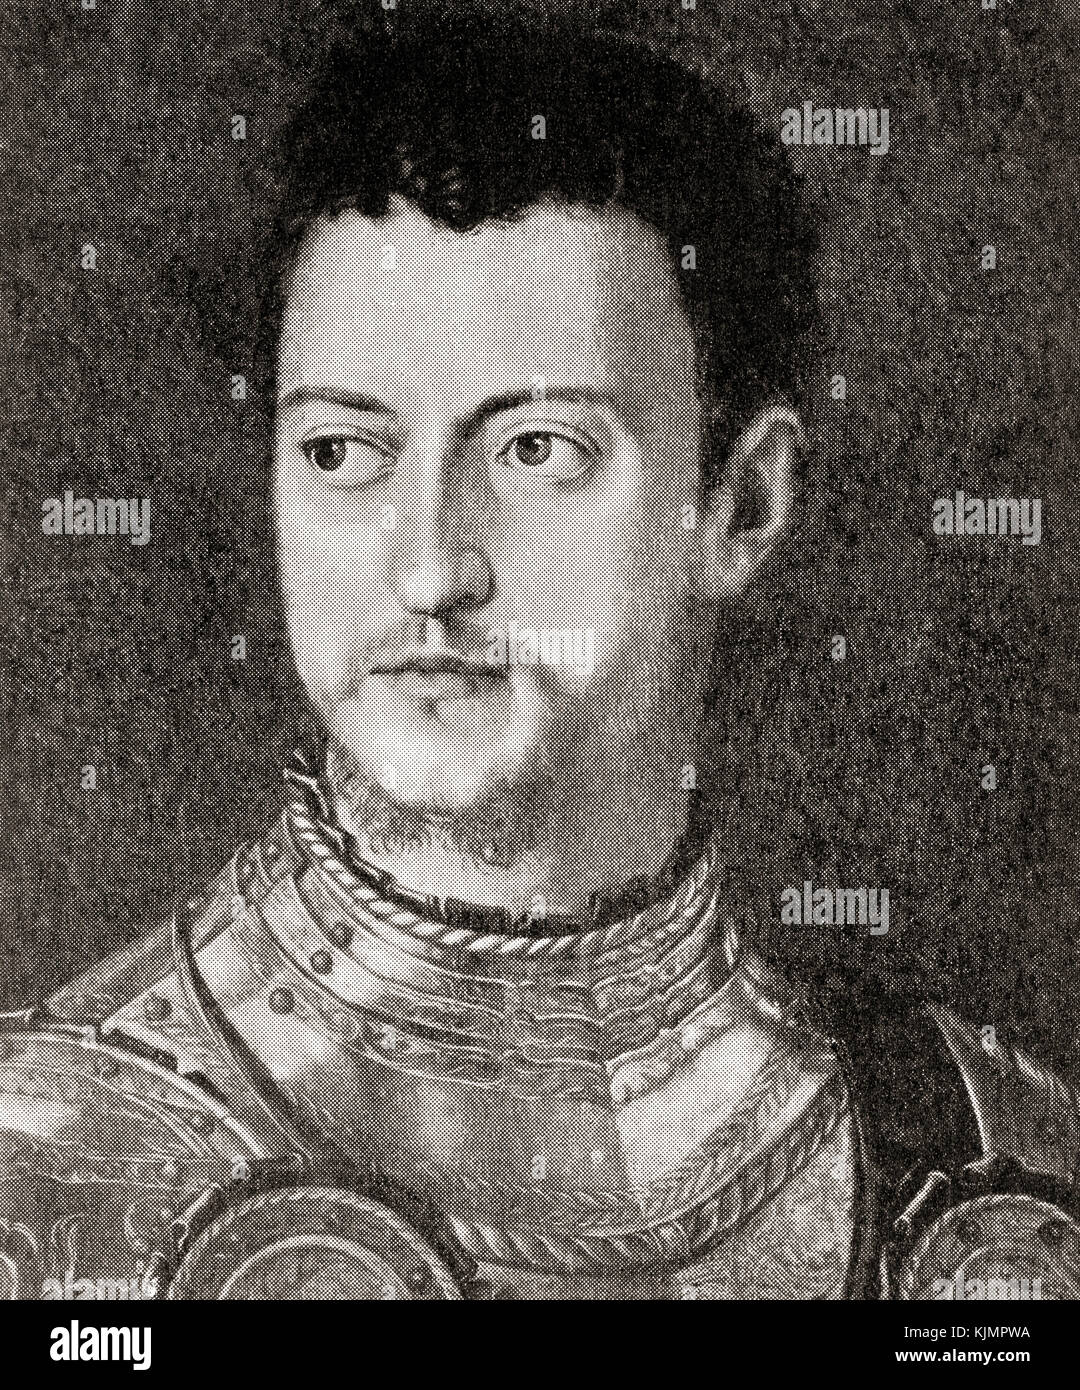 Cosimo di Giovanni De' Medici namens 'The Elder', 1389 - 1464. italienischen Bankier und Politiker. Von hutchinson Geschichte der Nationen, veröffentlicht 1915. Stockfoto